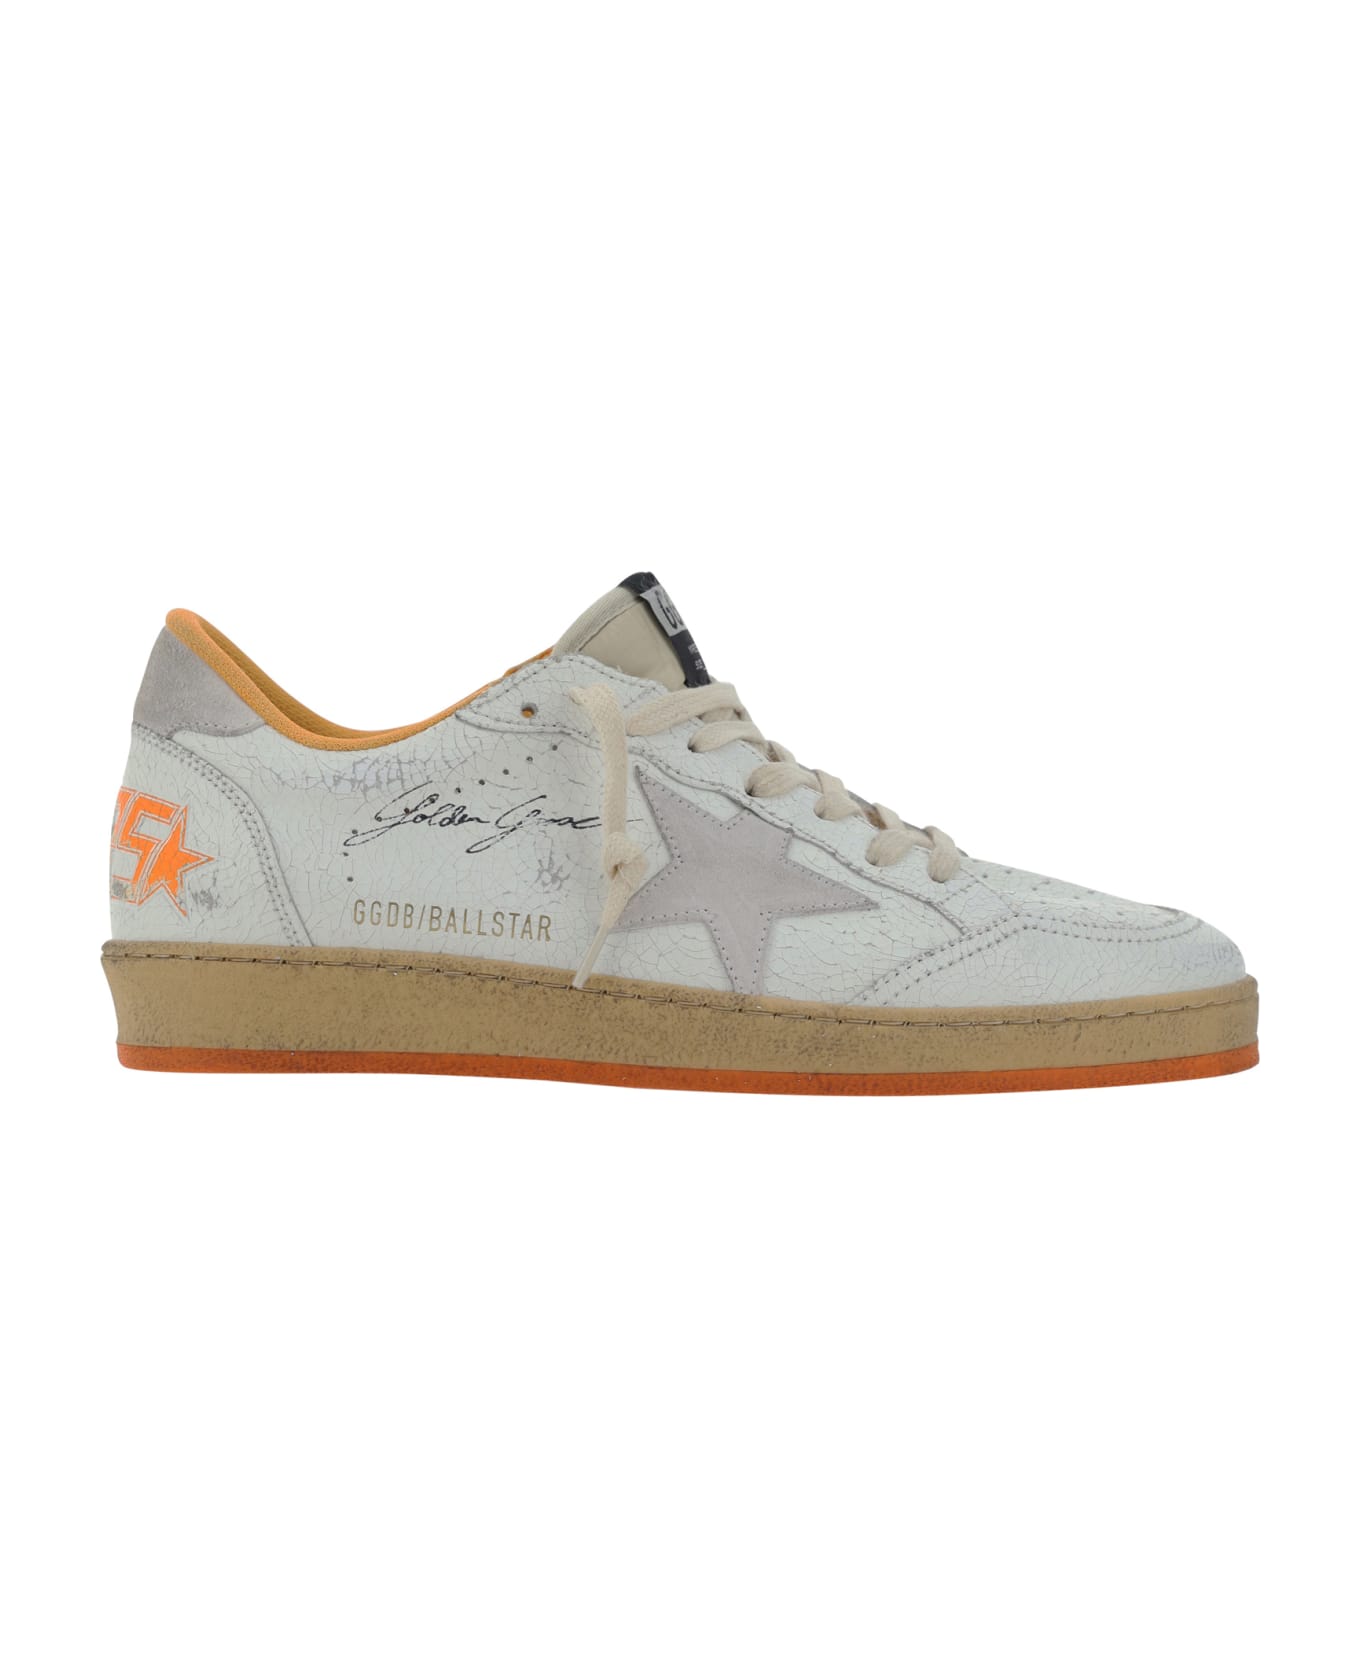 Golden Goose Ball Star Sneakers - White/beige/orange スニーカー